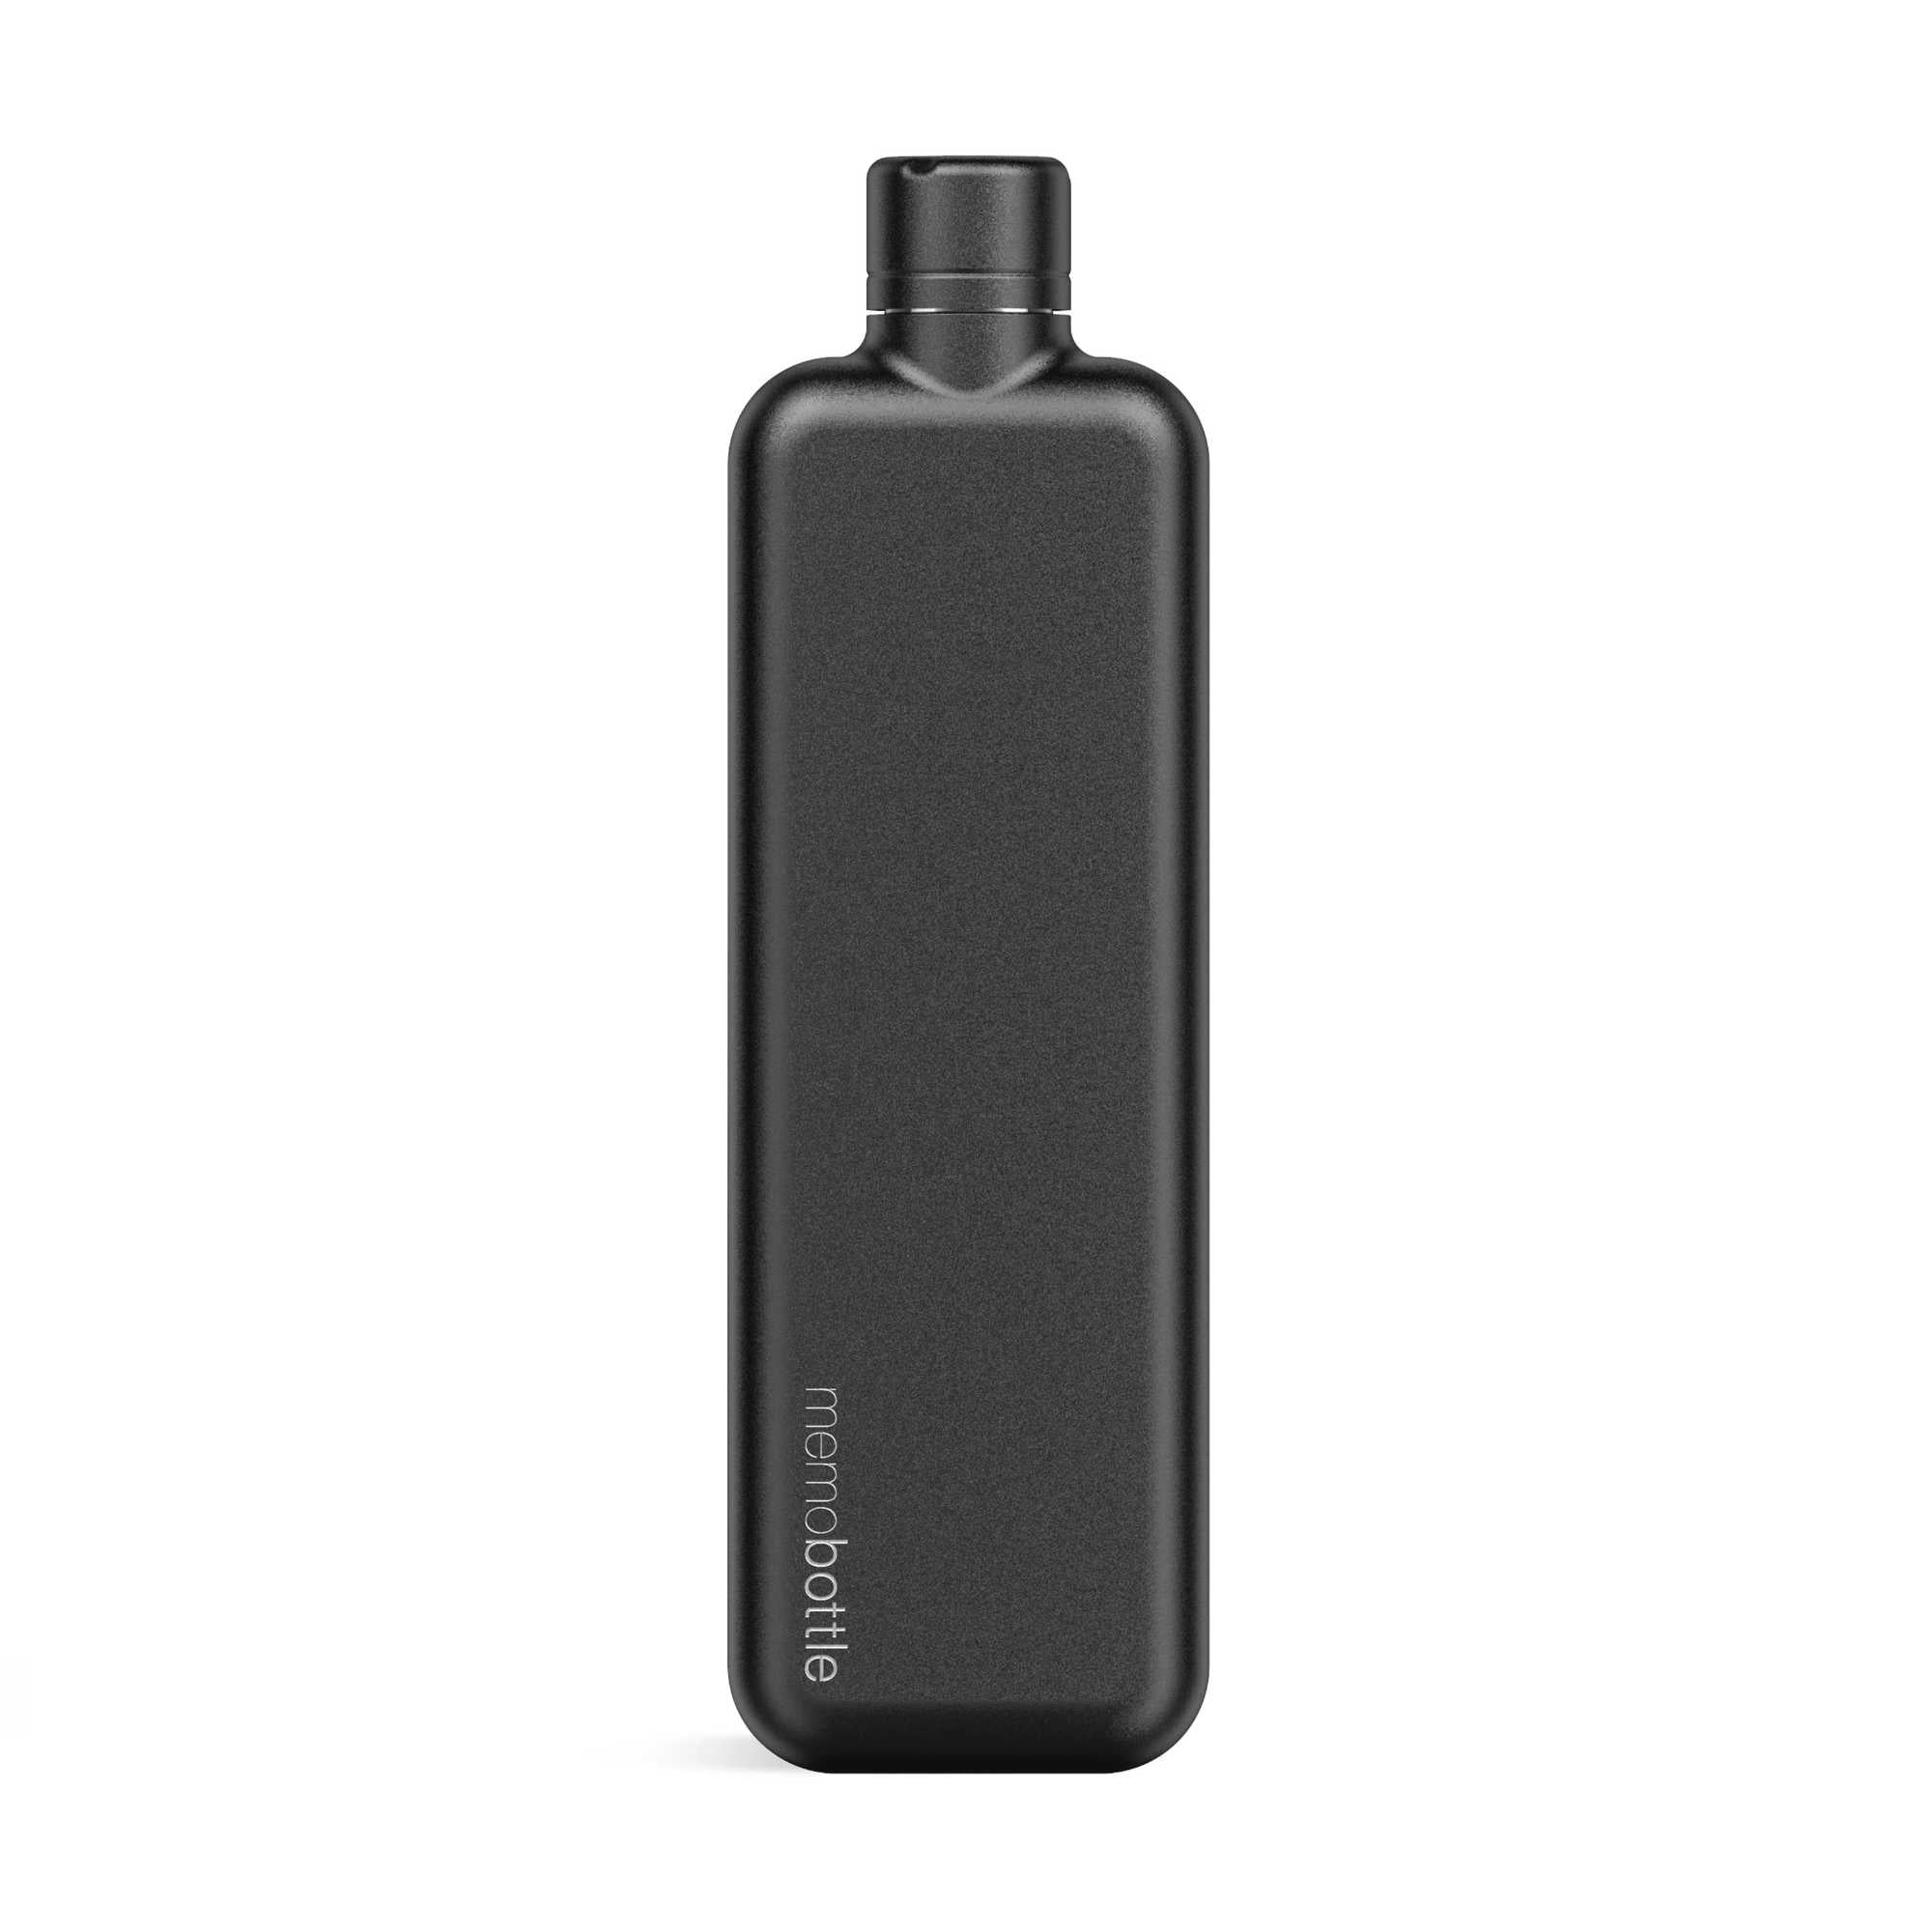 Memobottle Slim Stainless Steel Water Bottle 450ml, Black